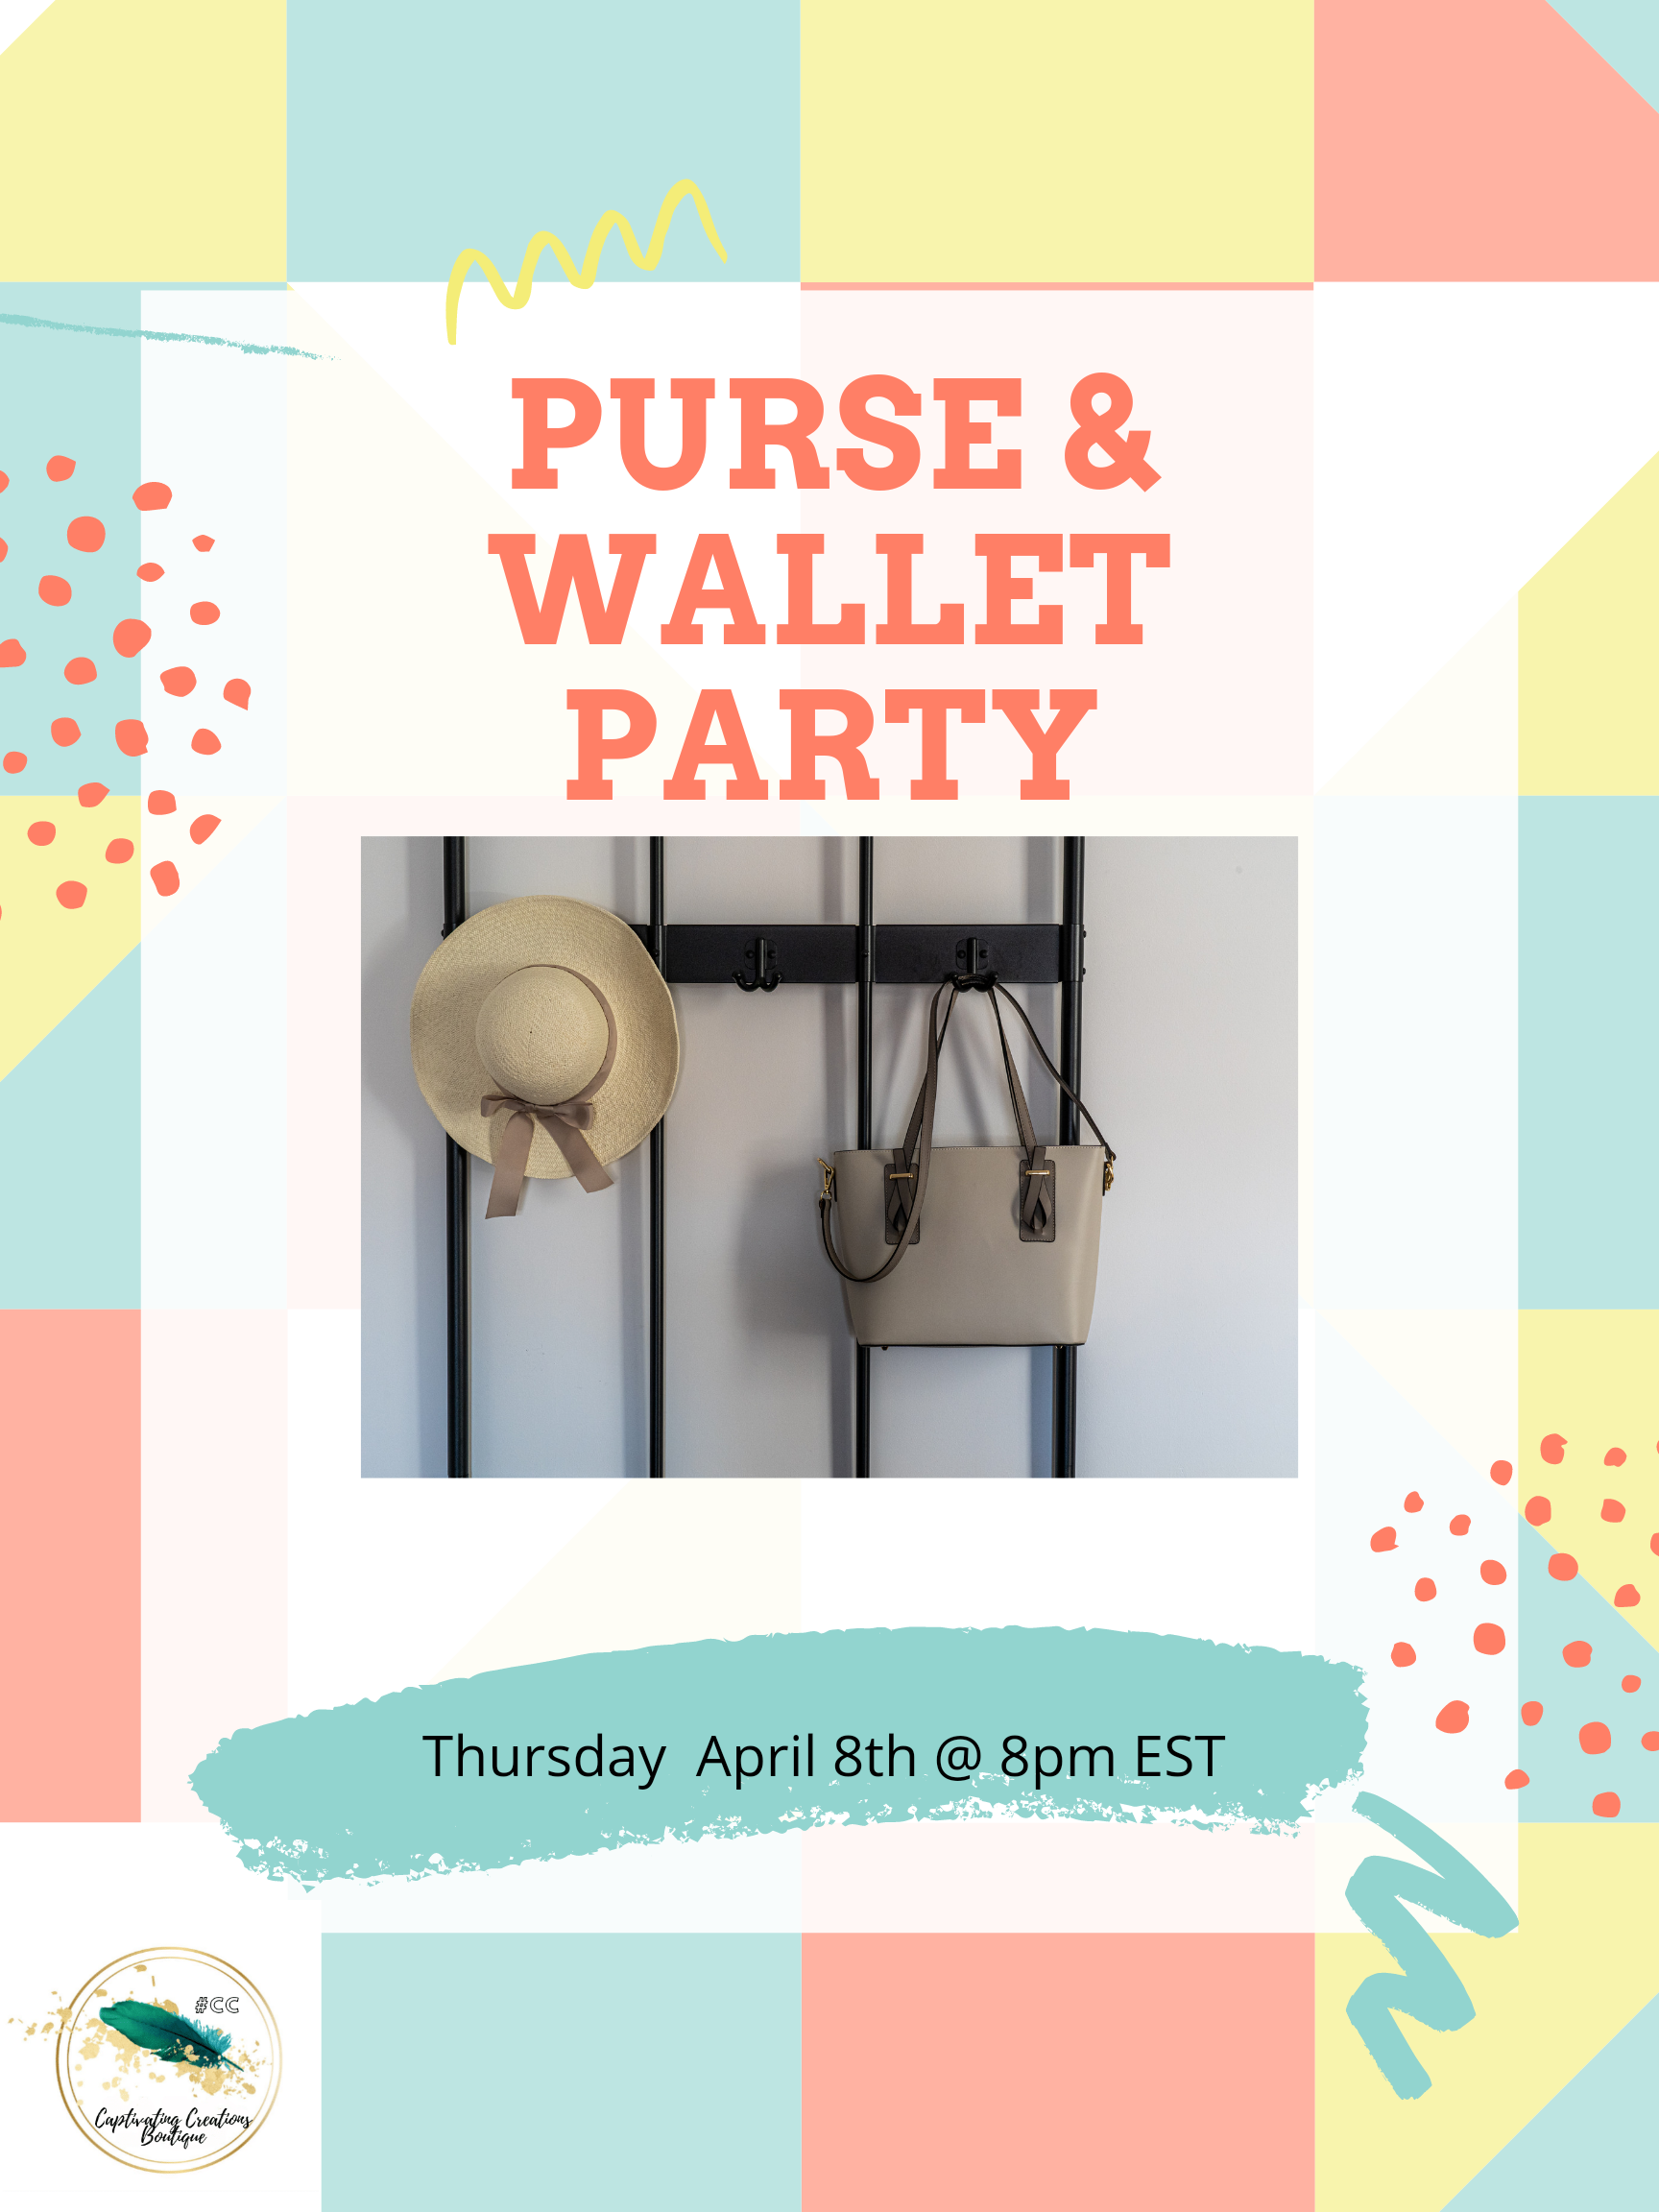 Purse & Wallet Party 4/8